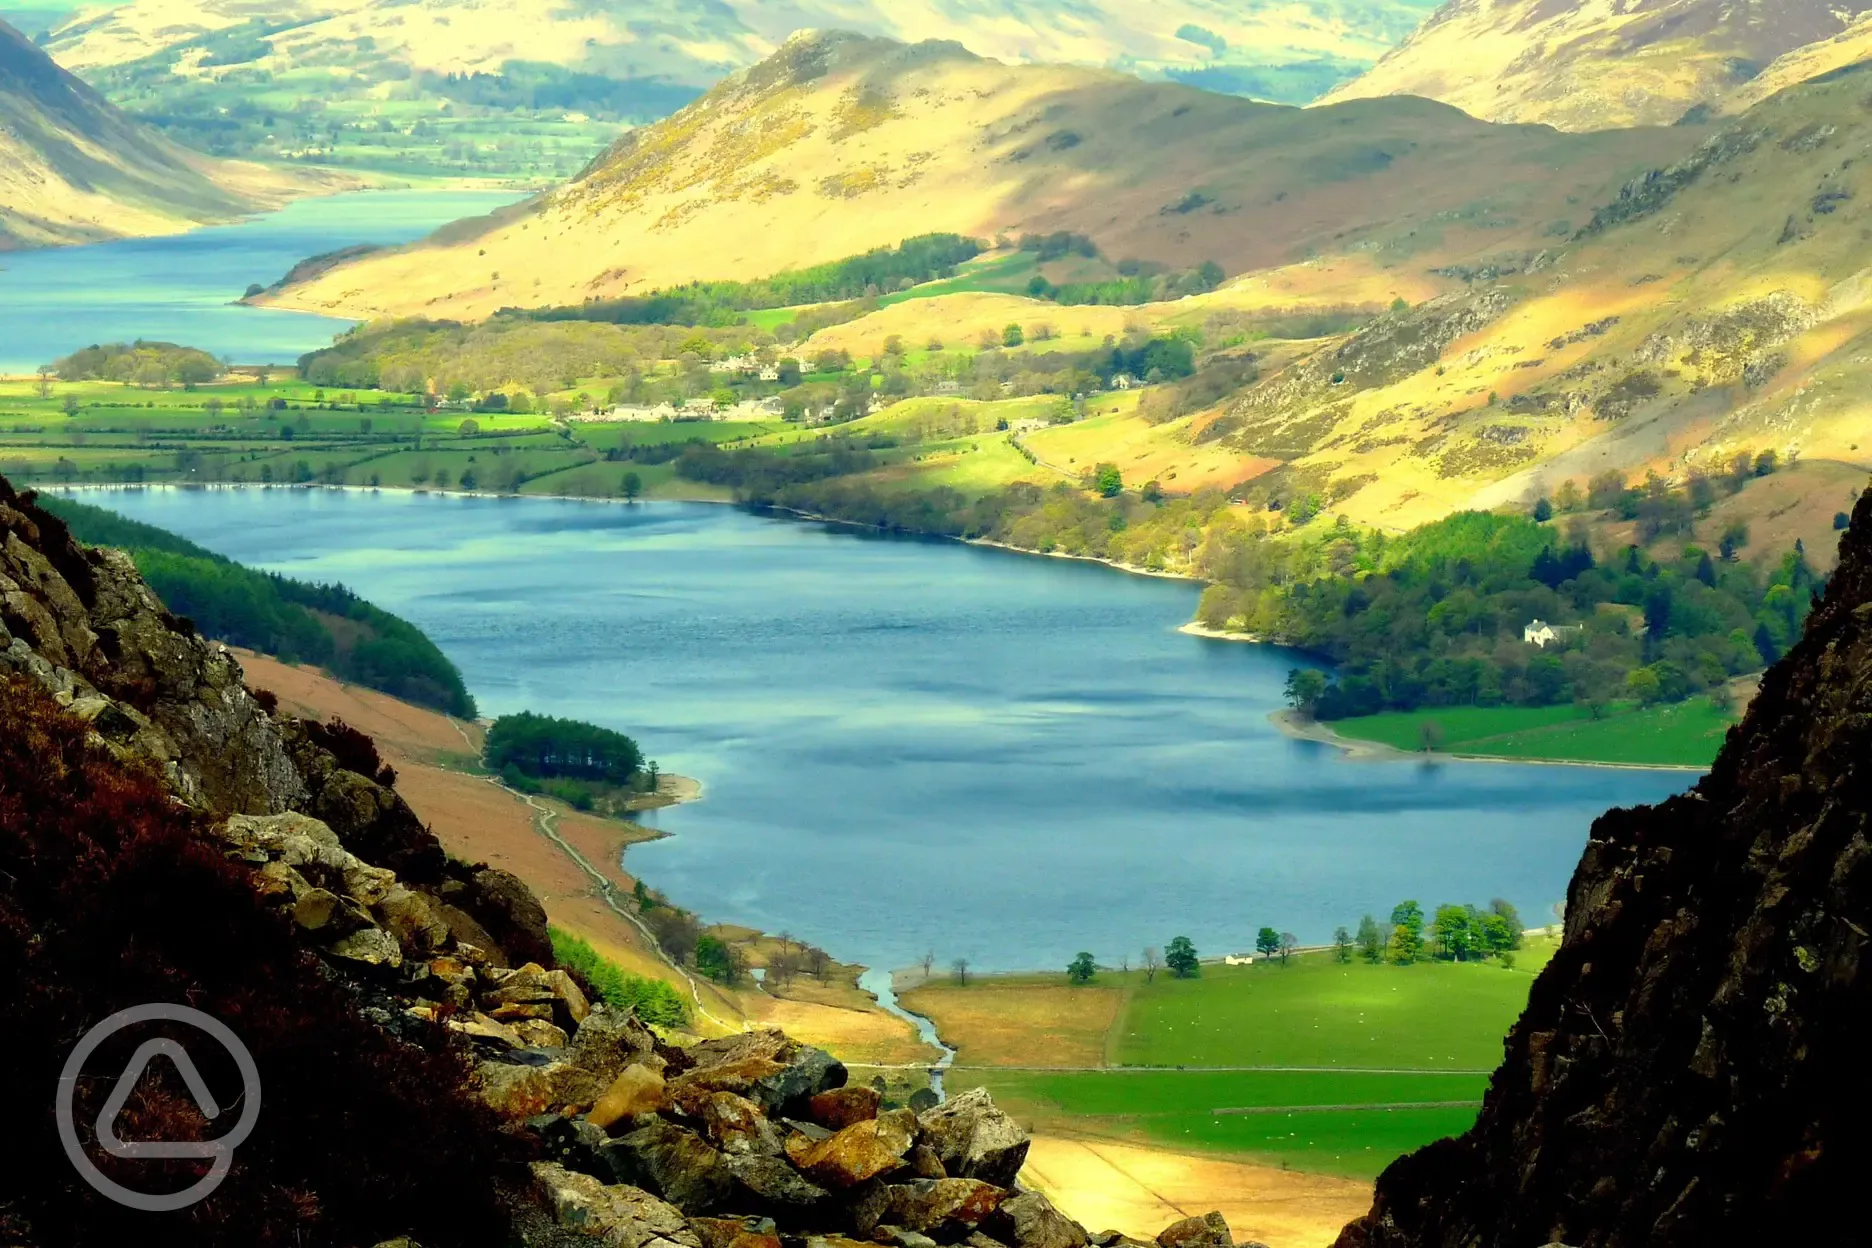 Lake District lovely views